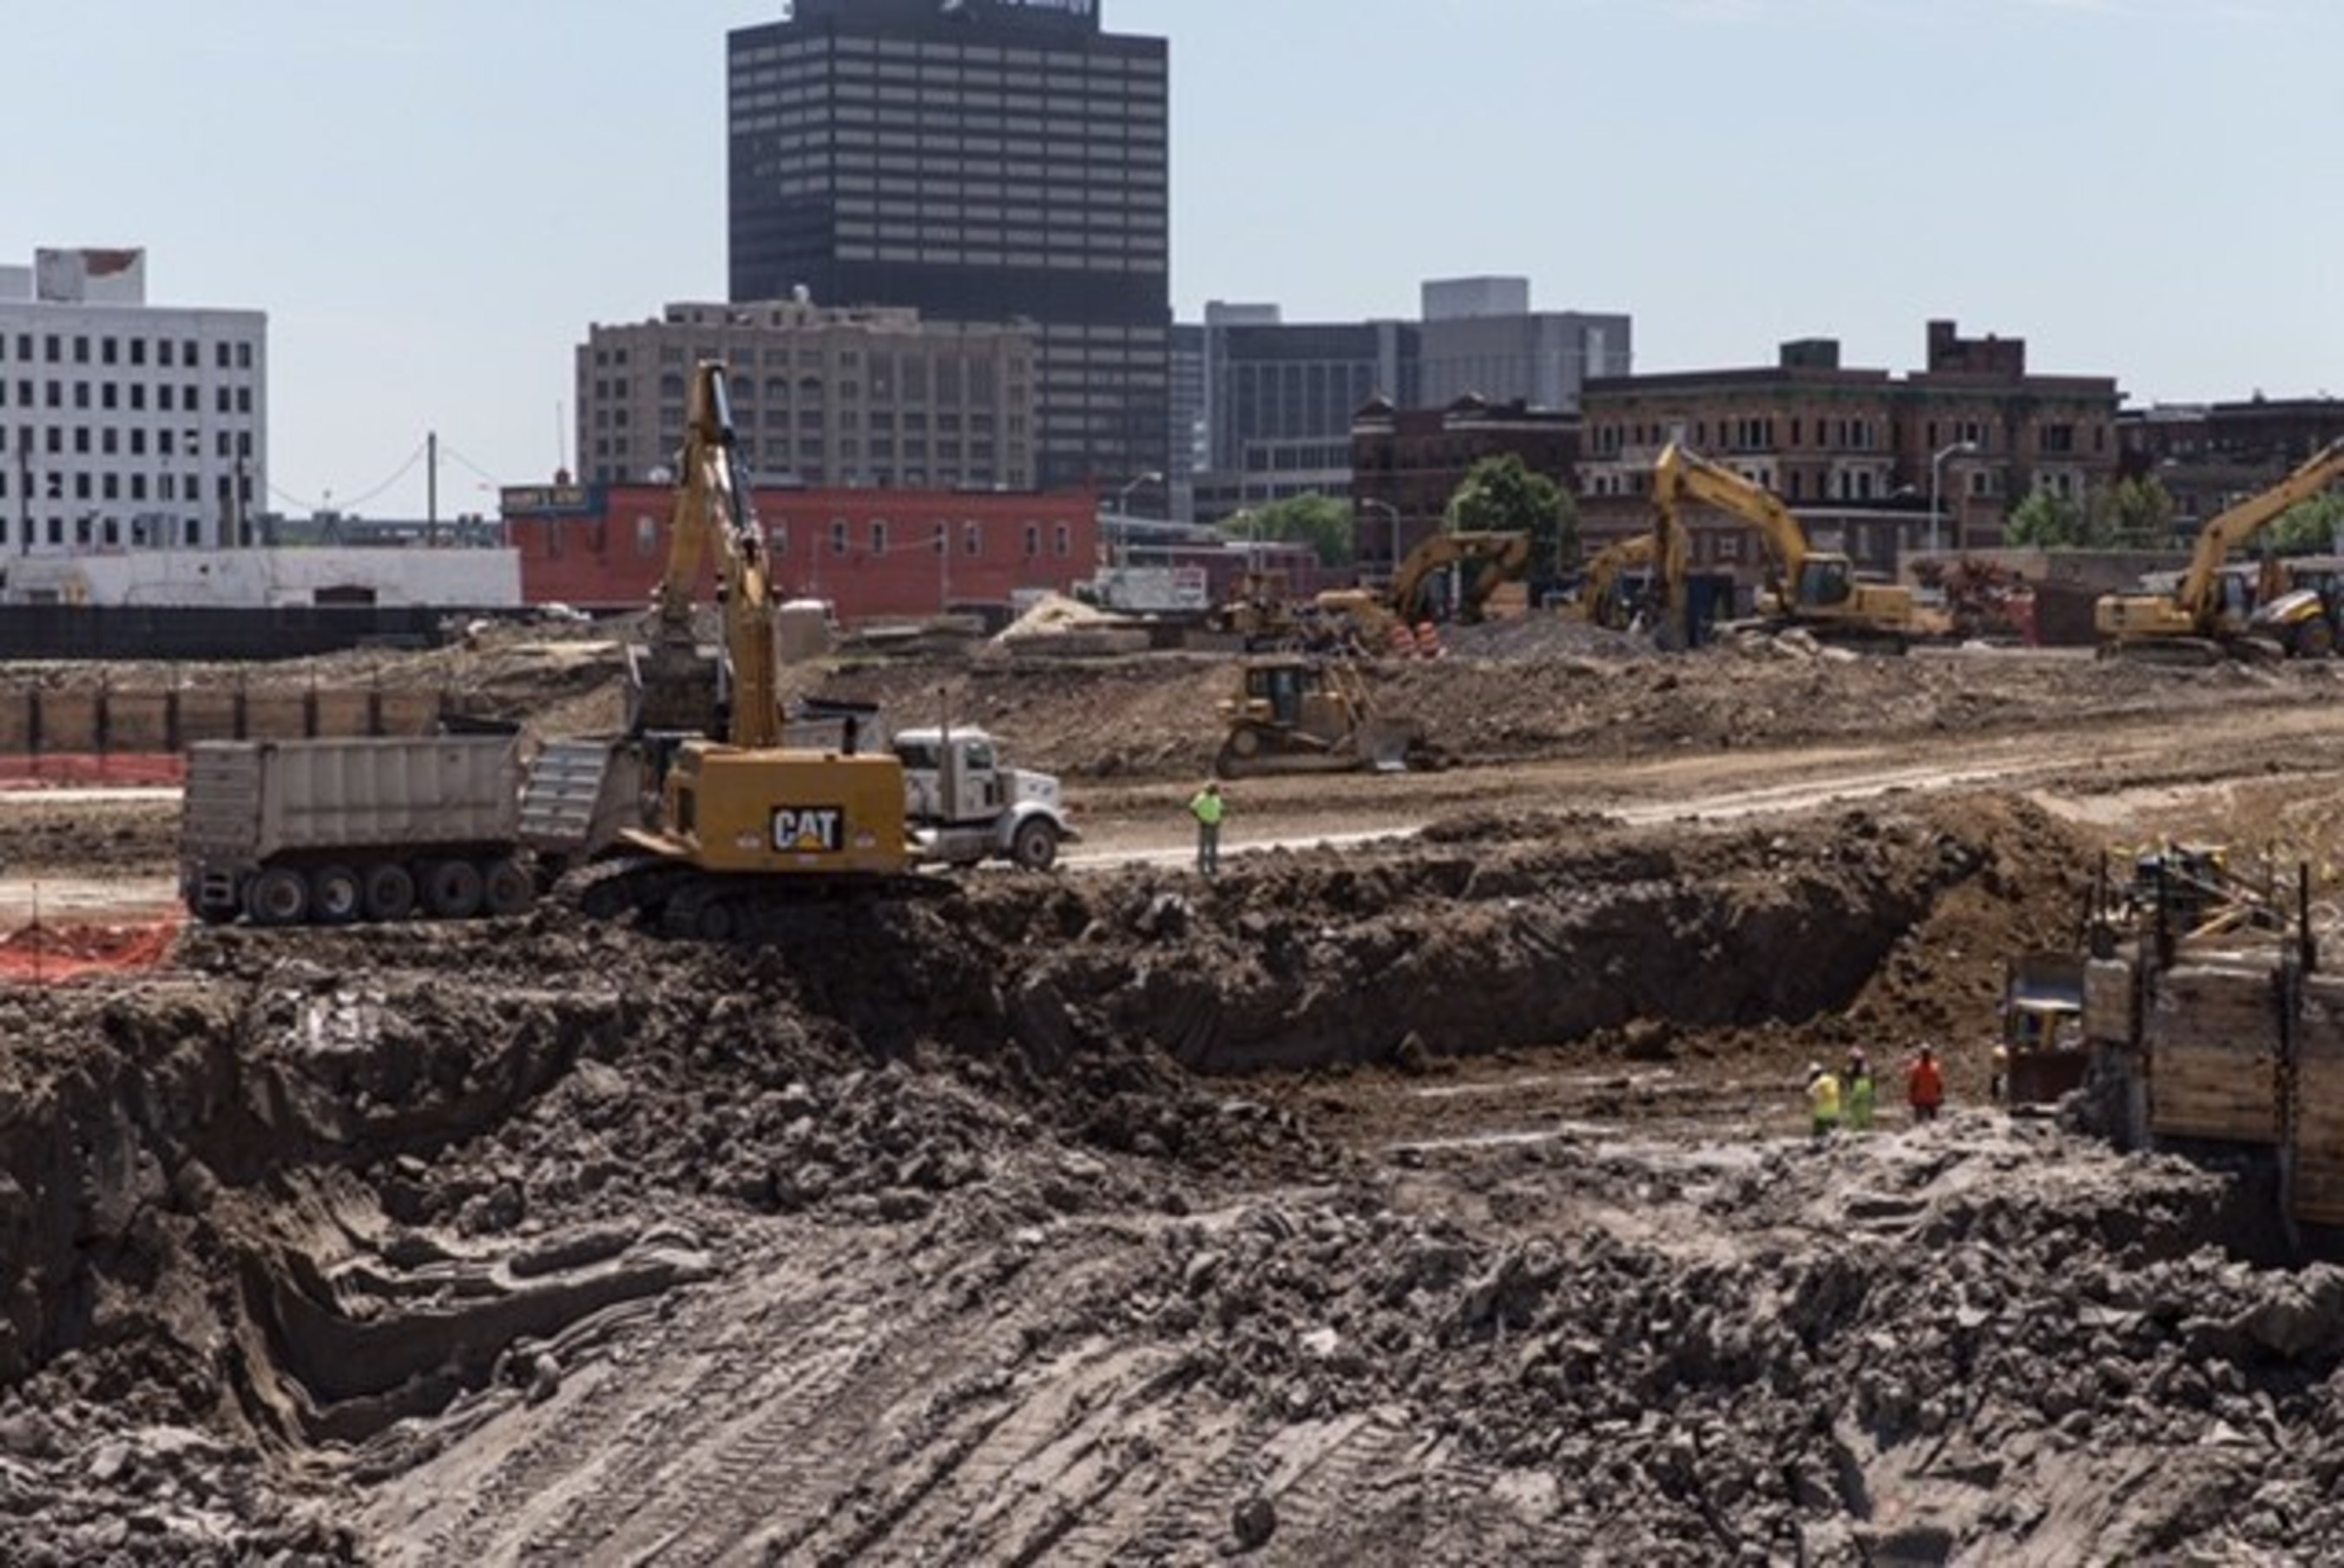 Detroit Events Center excavation progress. June 11, 2015.